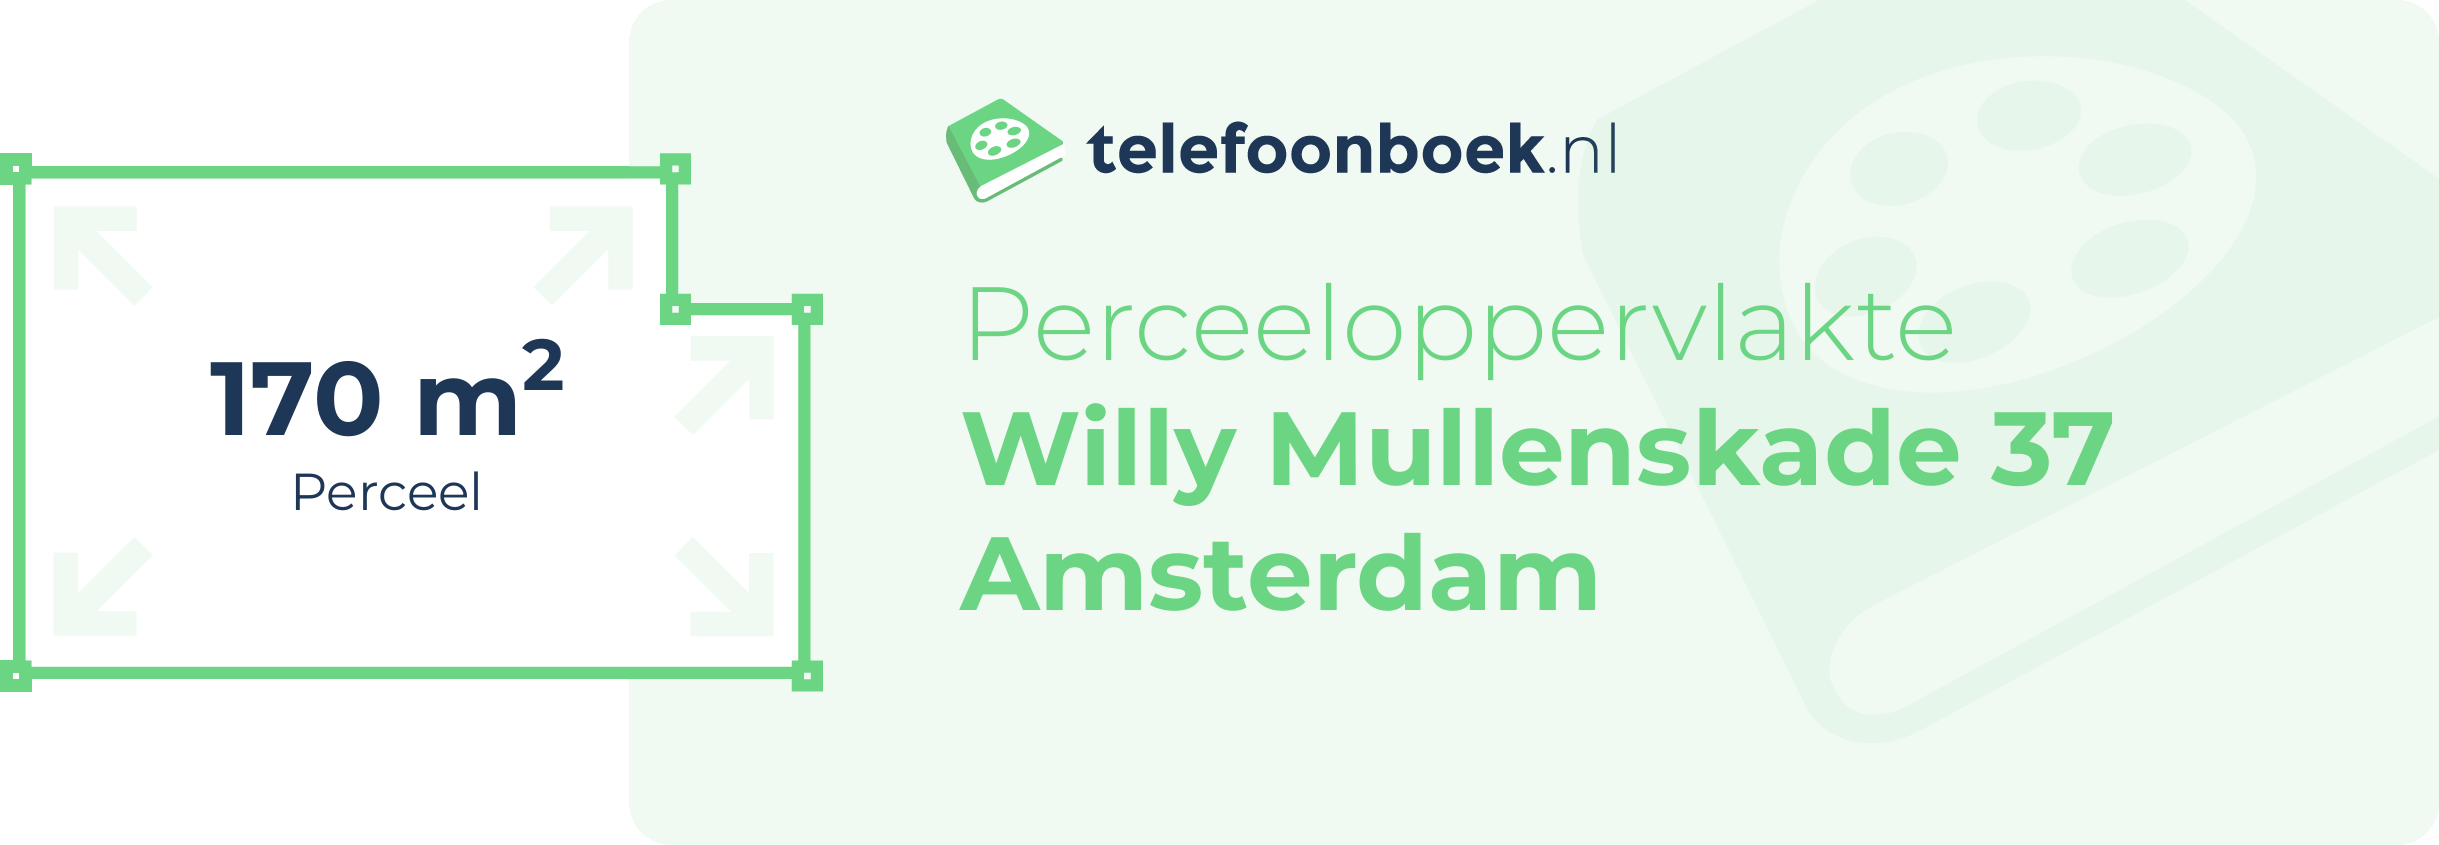 Perceeloppervlakte Willy Mullenskade 37 Amsterdam